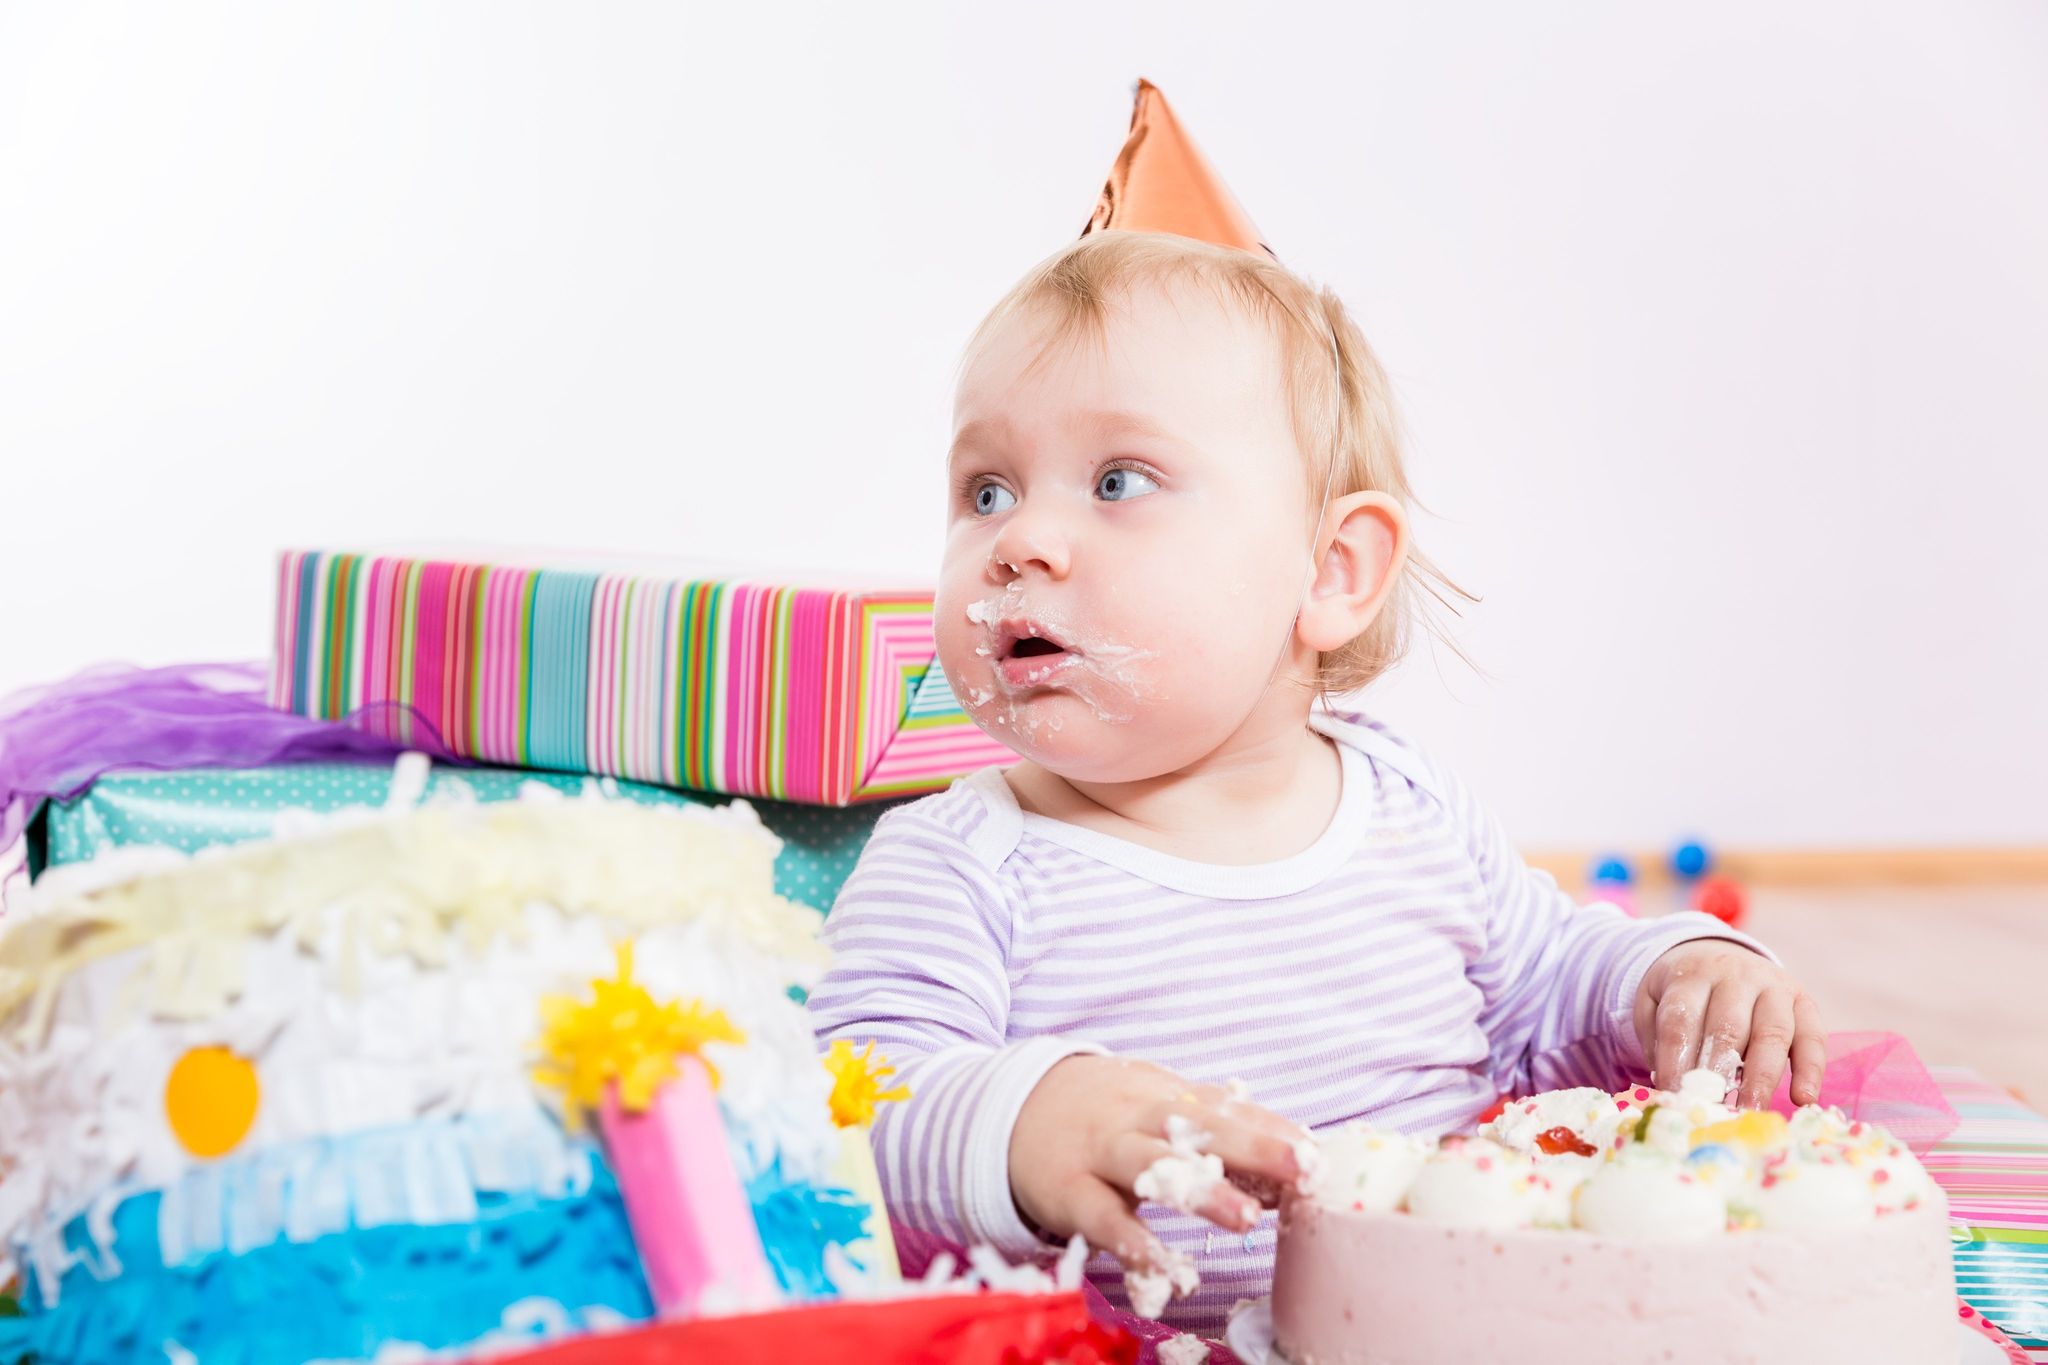 Bébé a 1 an : comment organiser son anniversaire ?